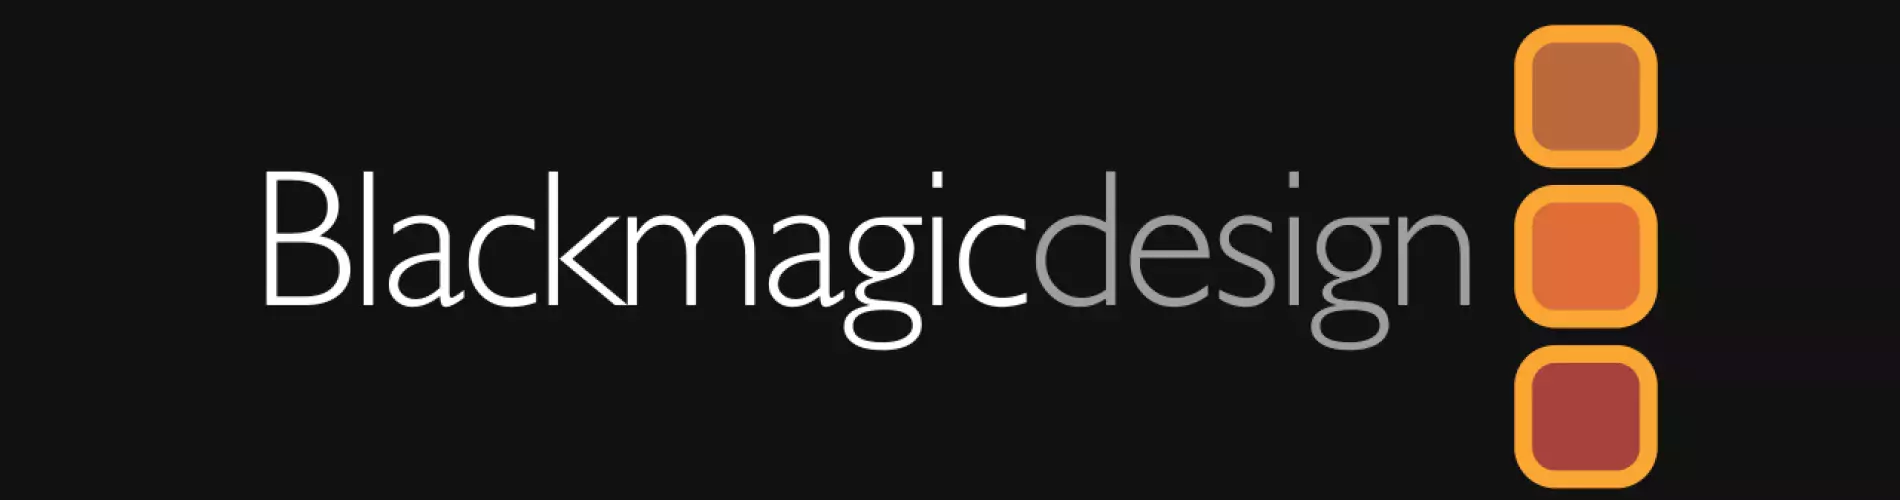 Blackmagic-Design-logo